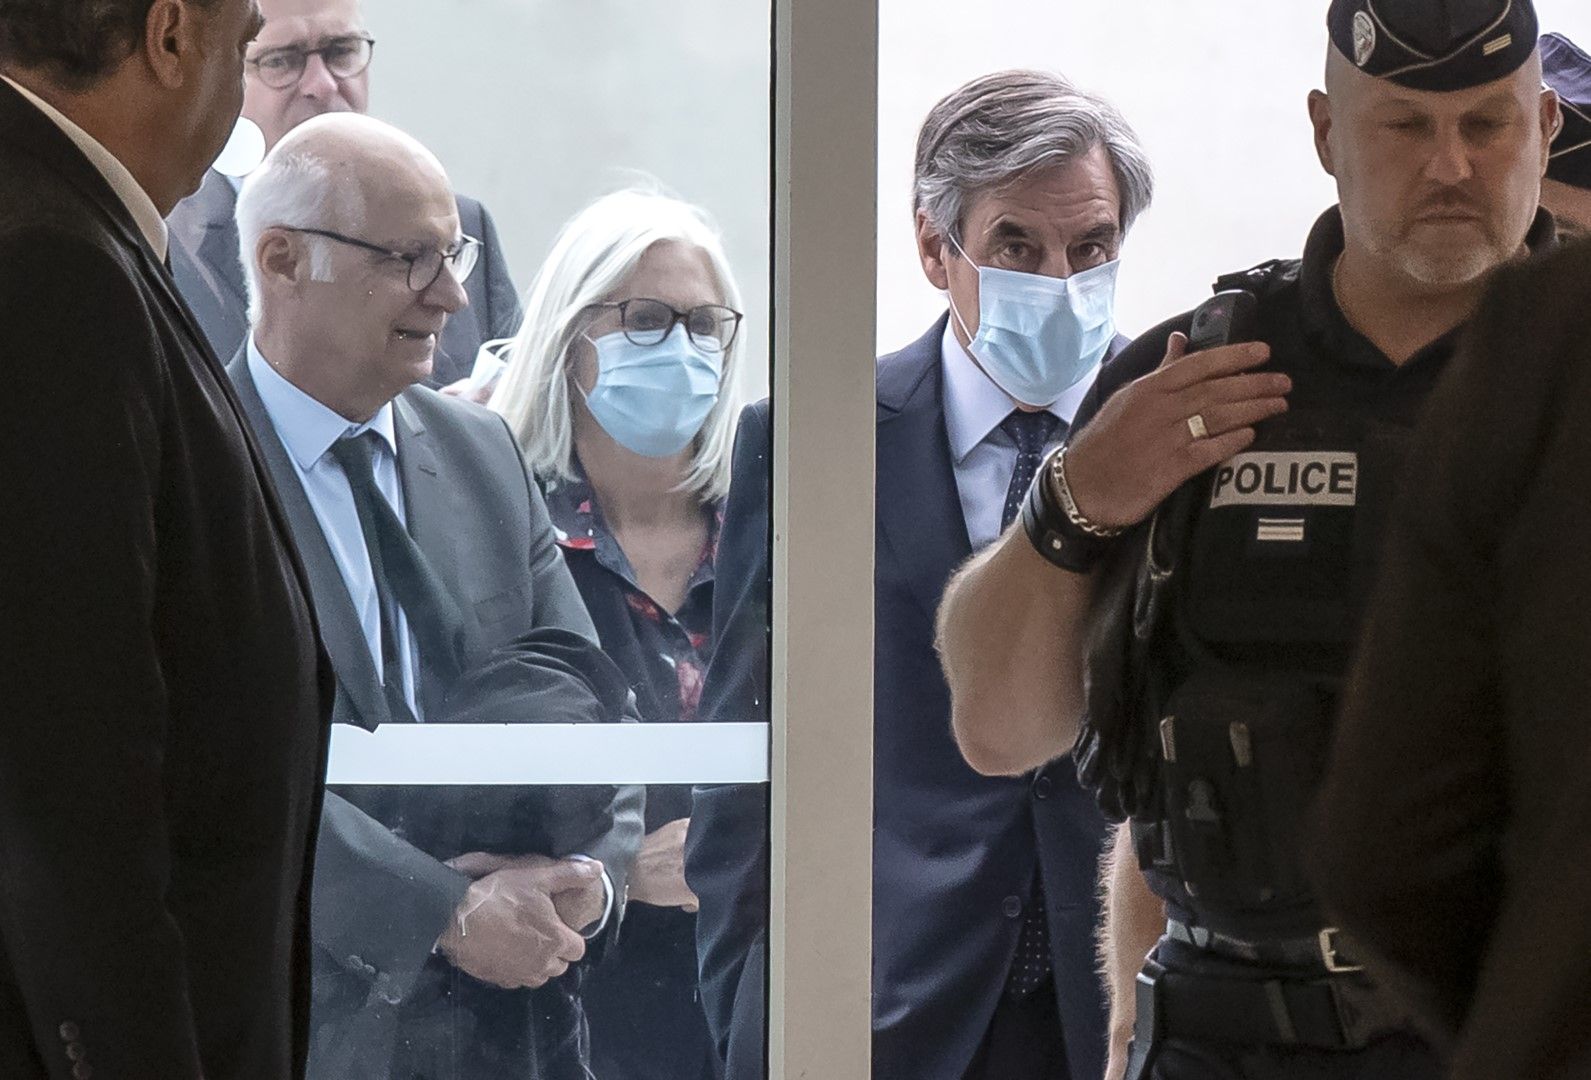  Бившият премиер на Франция Франсоа Фийон вдясно и съпругата му Пенелъпи носят защитни маски при пристигането си в съда в Париж, в понеделник, 29 юни 2020 г.